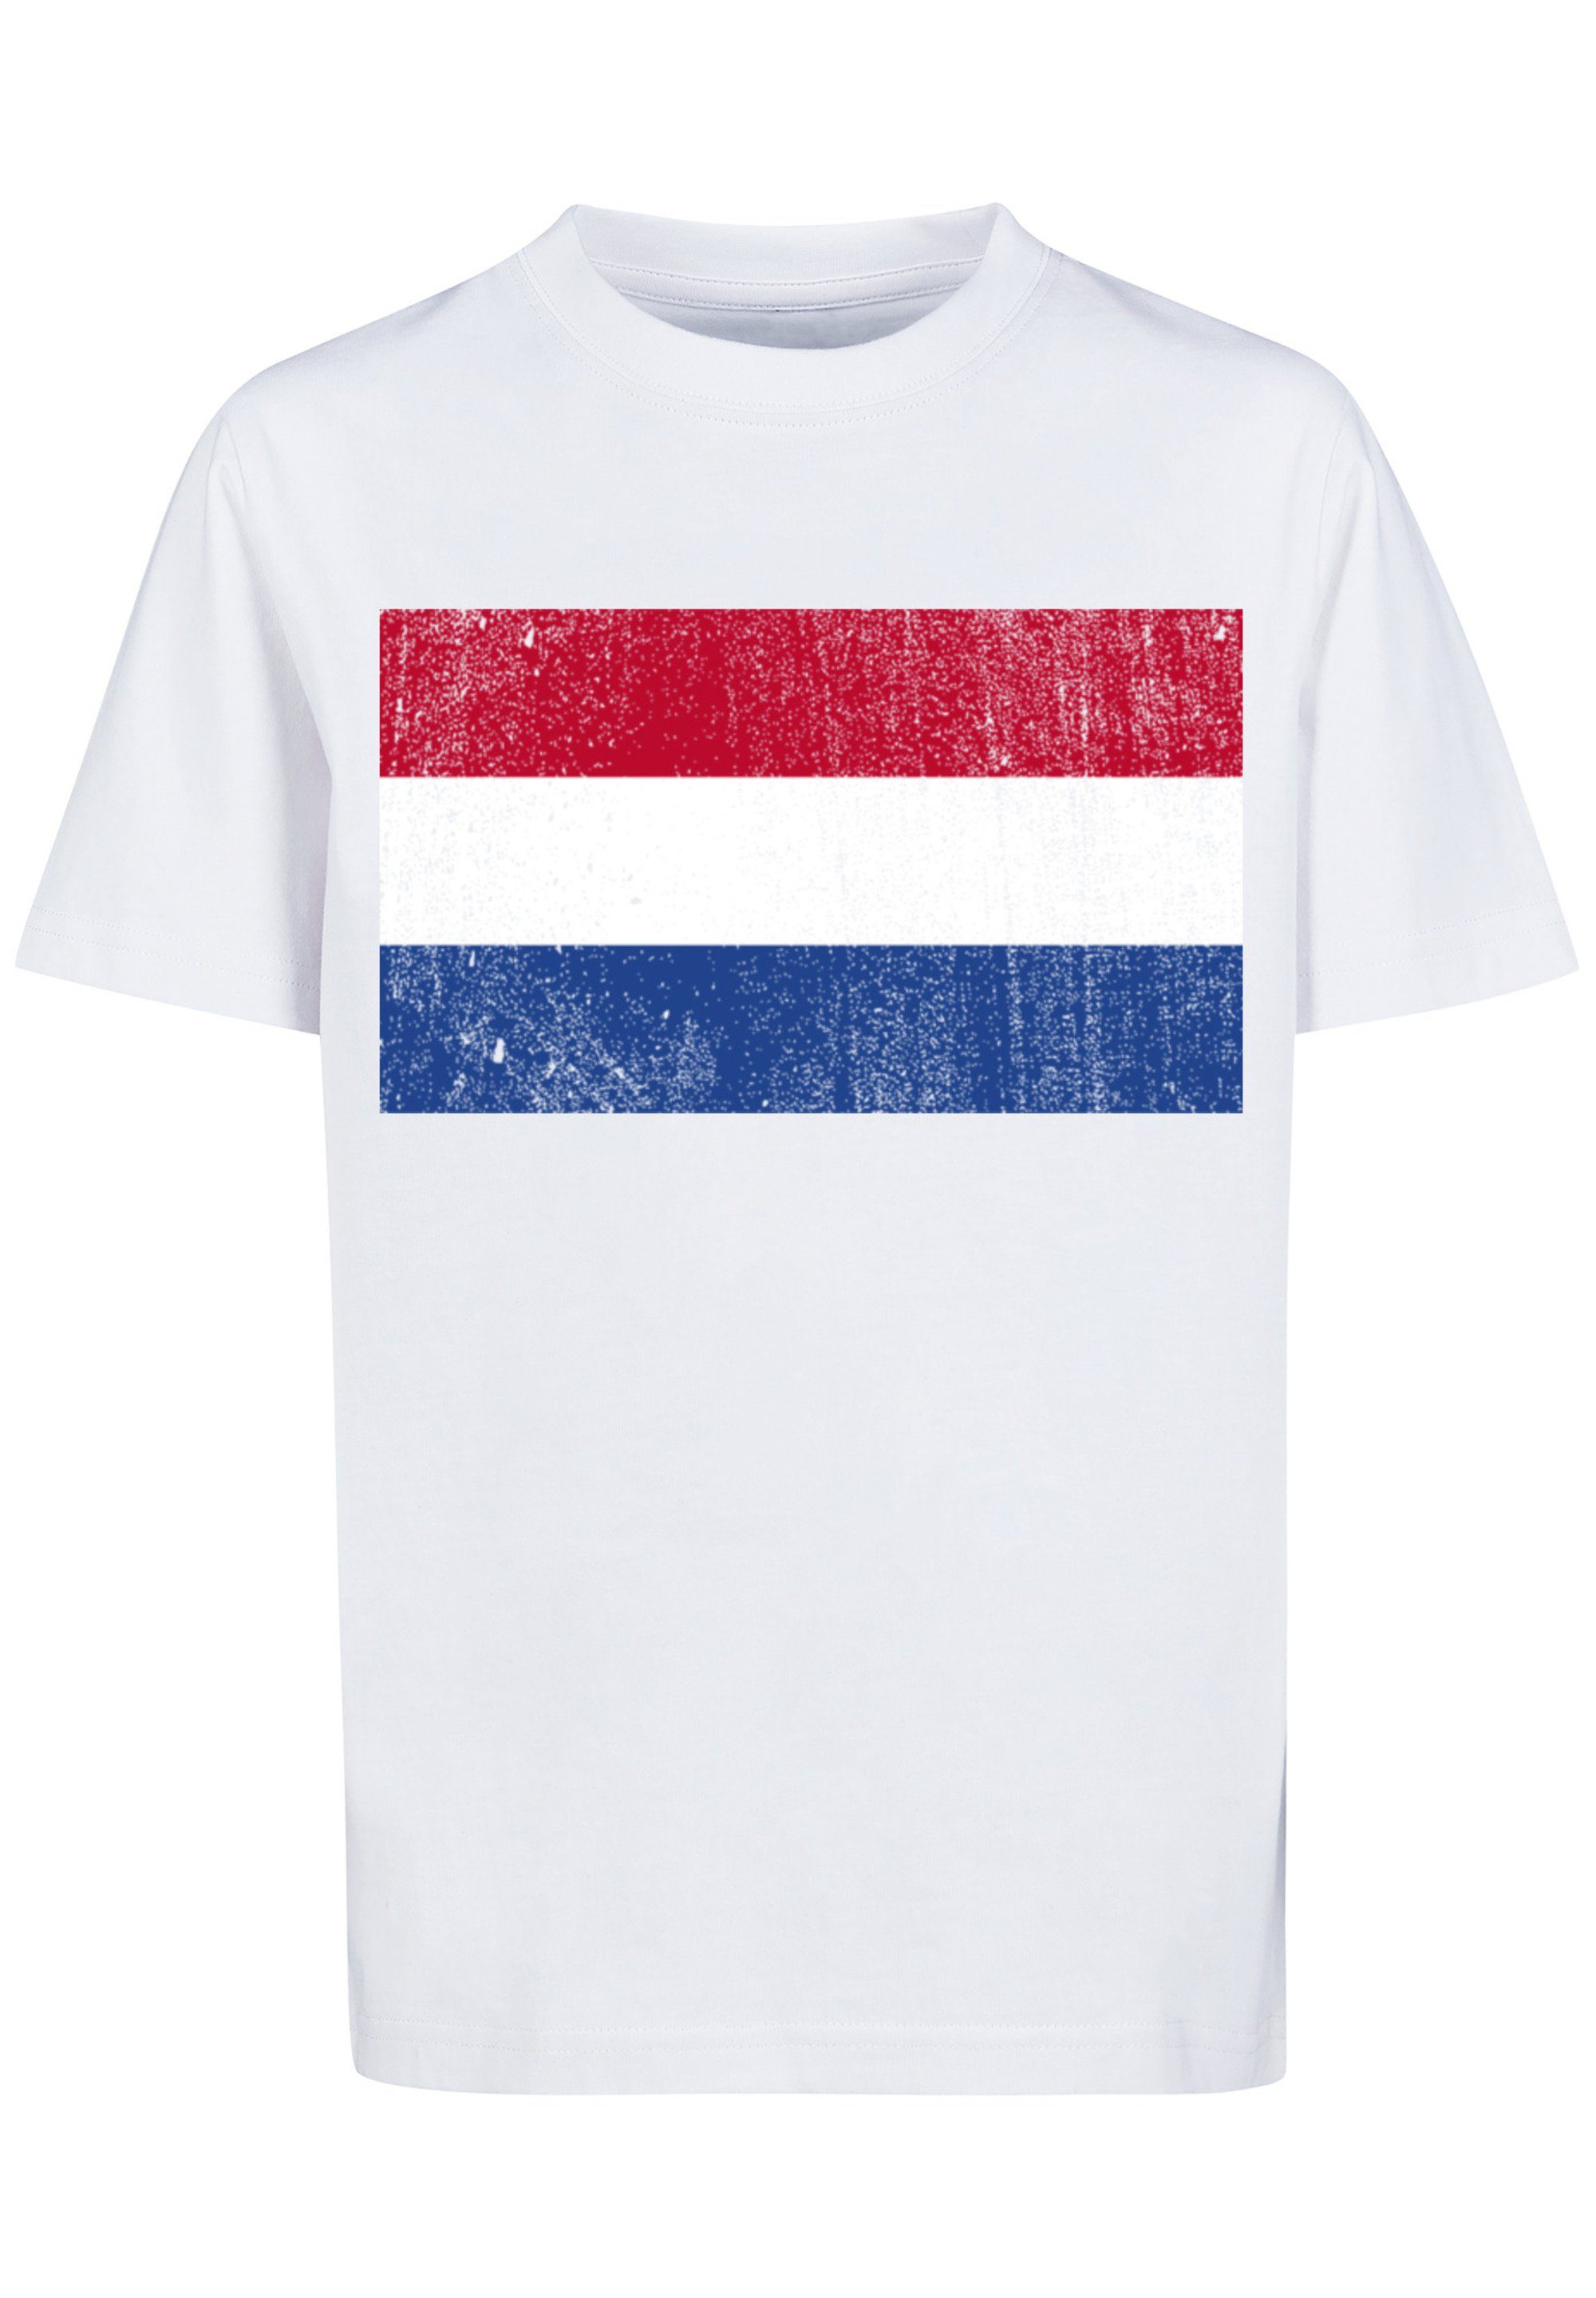 F4NT4STIC T-Shirt Netherlands NIederlande Holland trägt Flagge groß distressed cm 145 Größe 145/152 Print, ist Das und Model